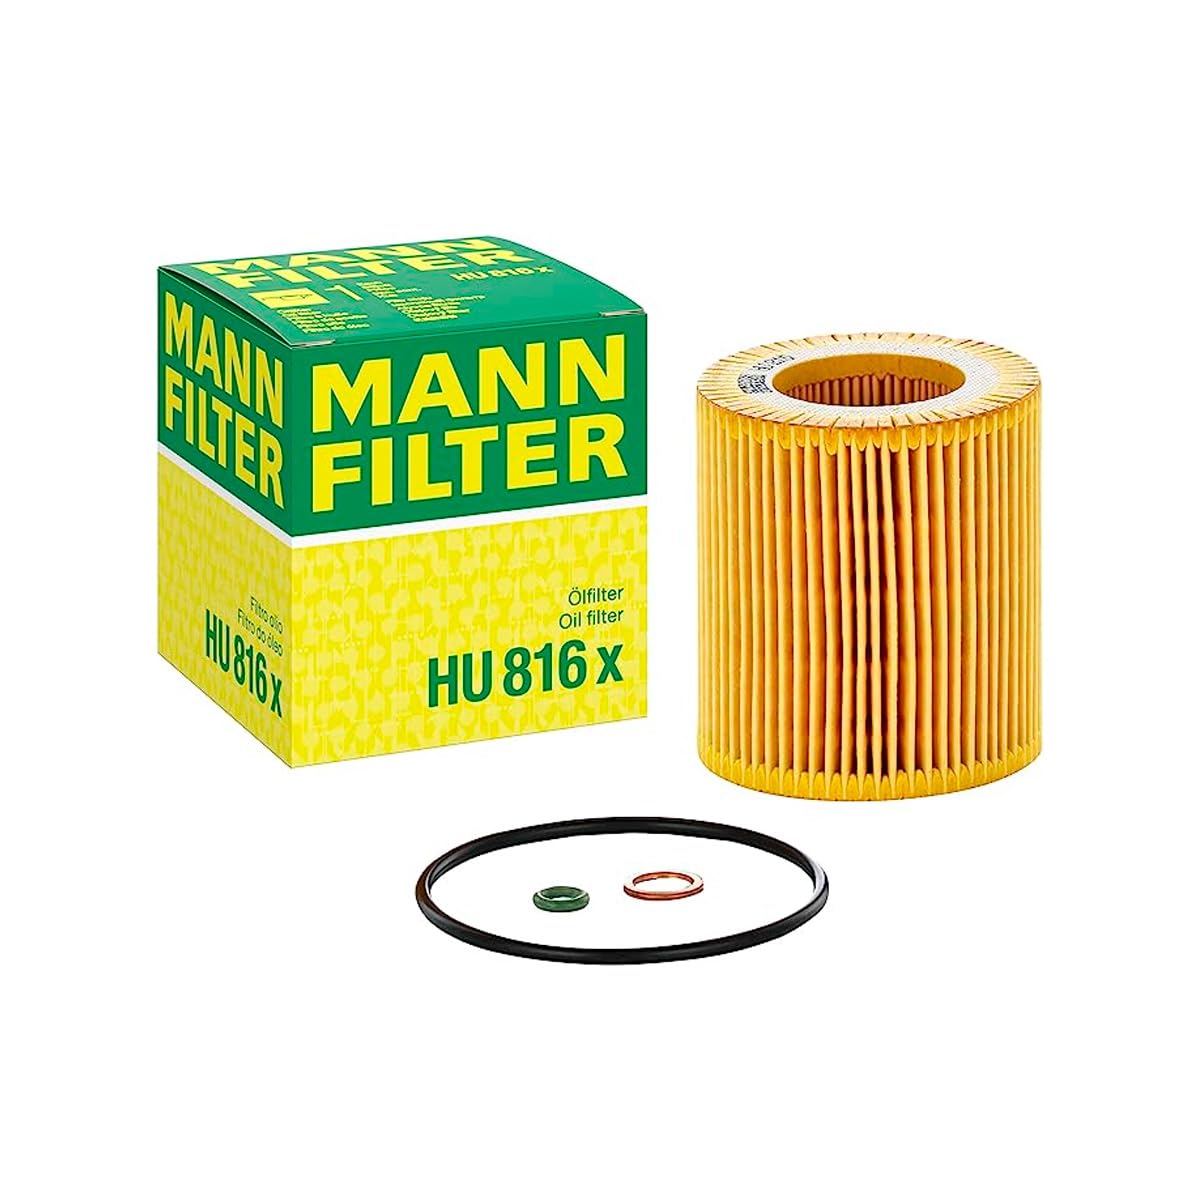 MANN-FILTER HU 816 X Ölfilter – Ölfilter Satz mit Dichtung / Dichtungssatz – Für PKW von MANN-FILTER